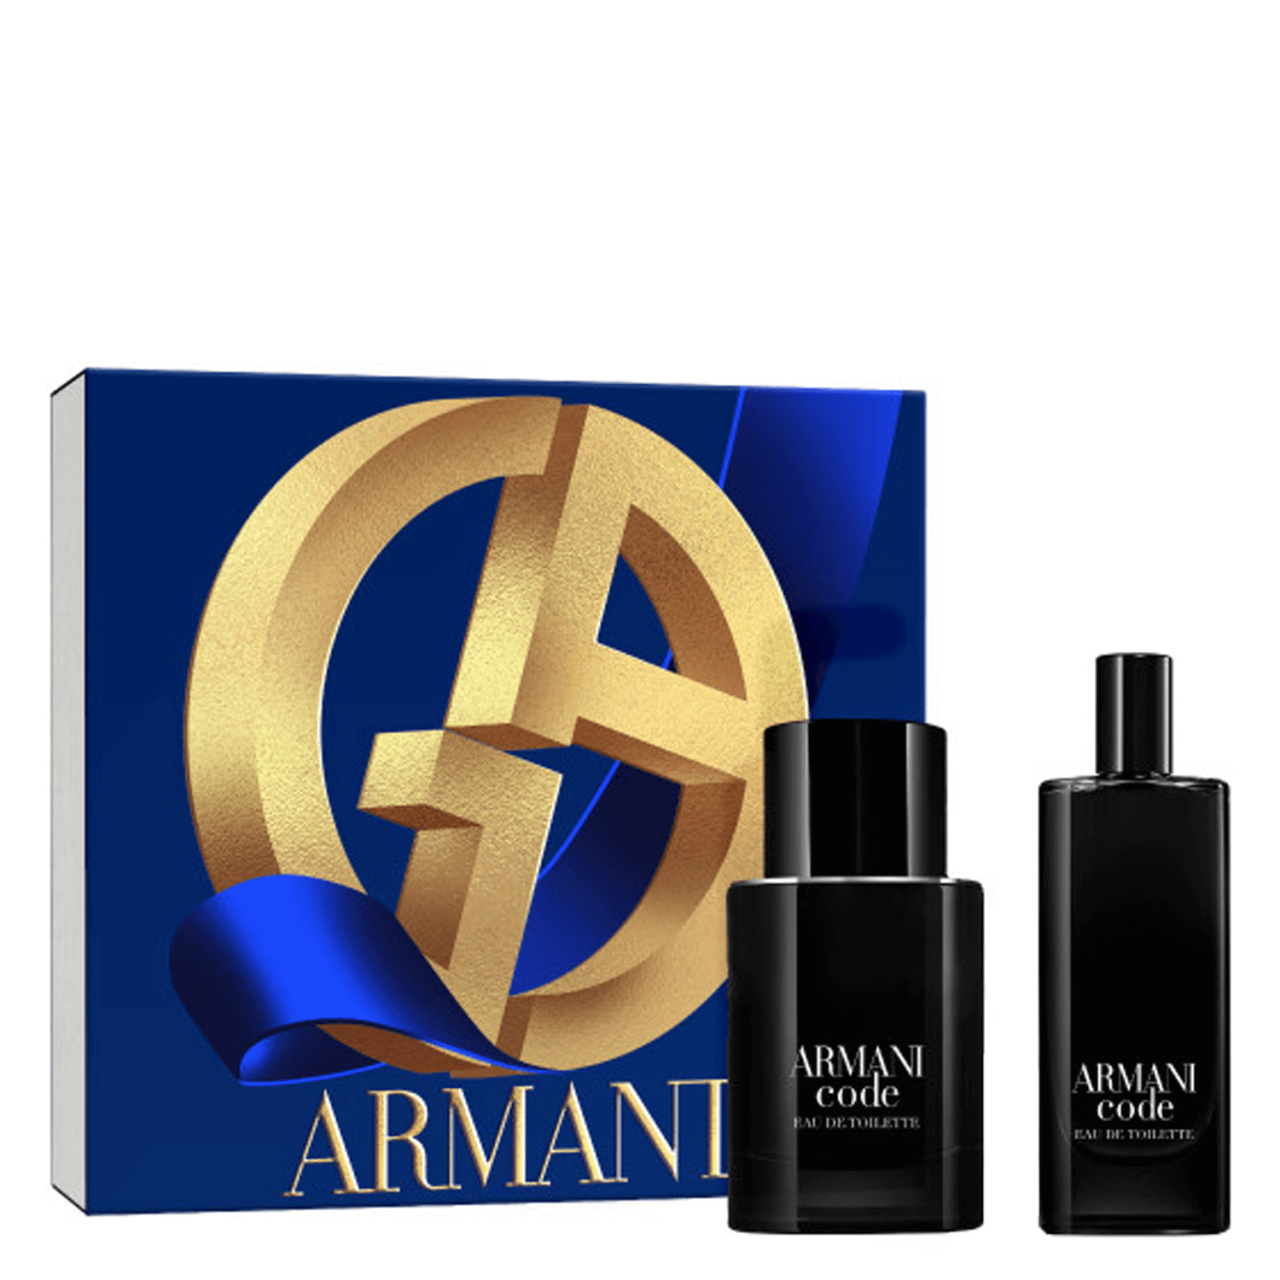 Armani Code - Eau de Toilette Kit von Giorgio Armani